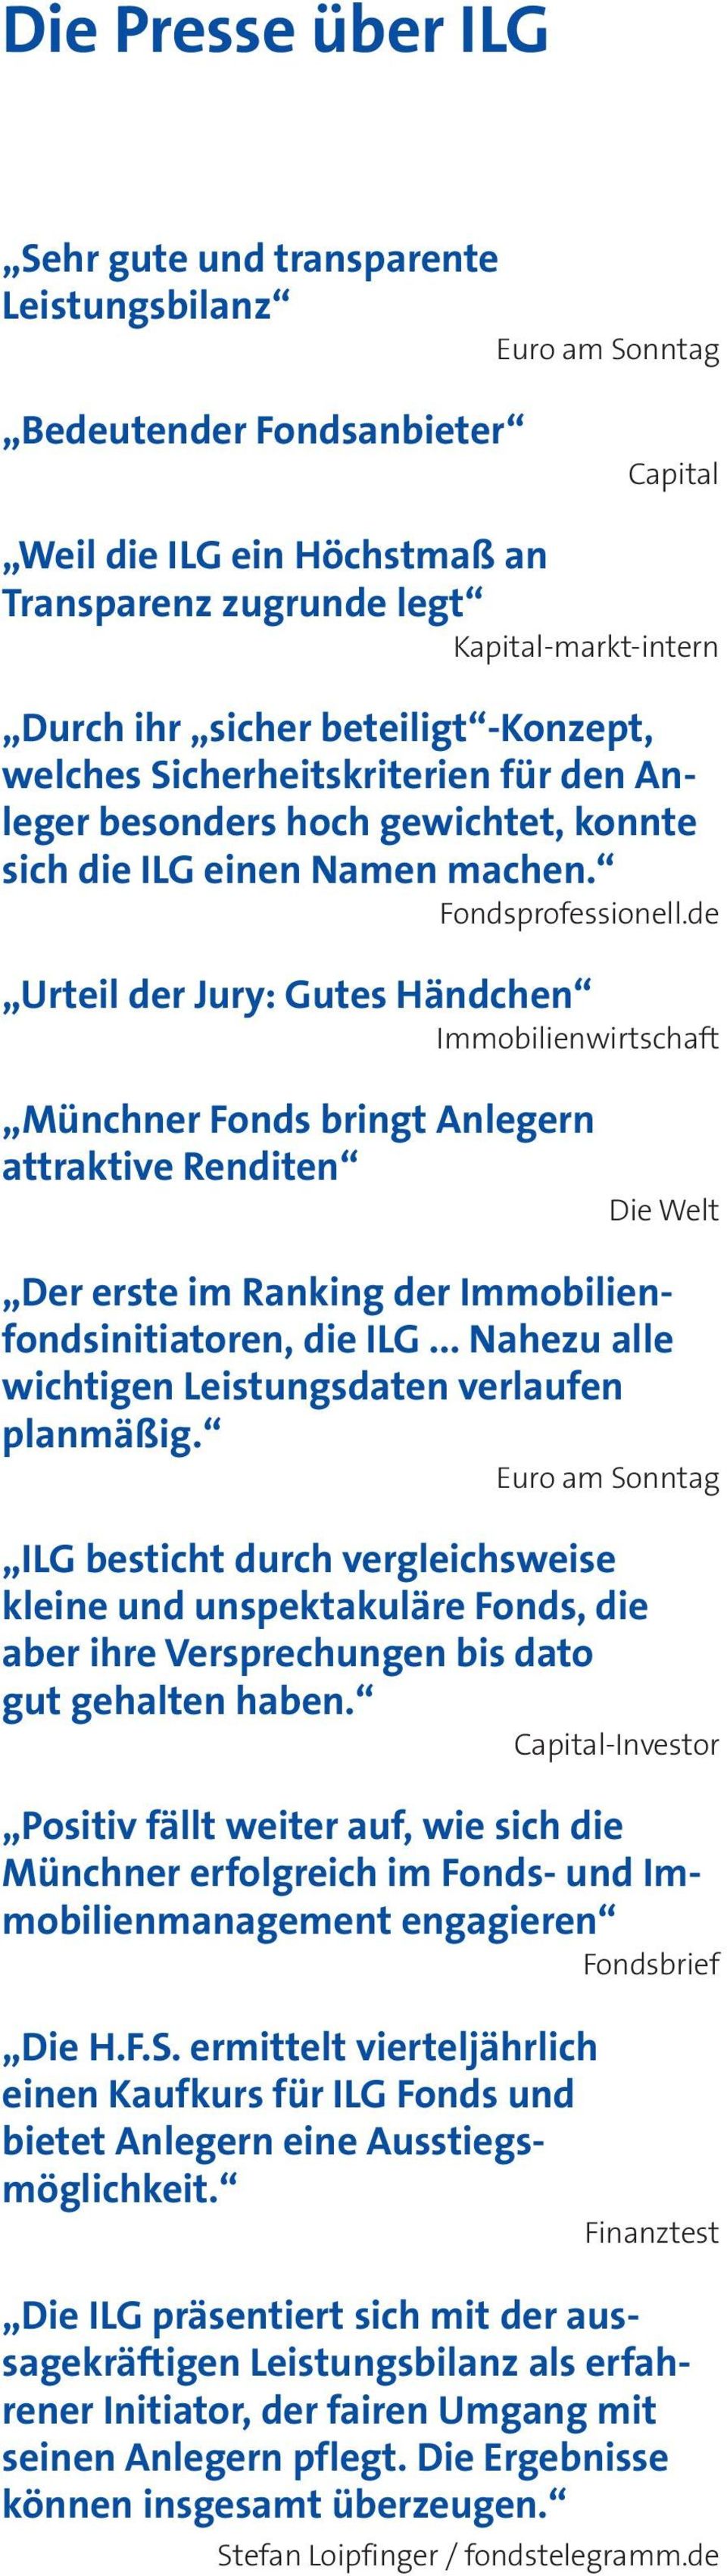 de Urteil der Jury: Gutes Händchen Immobilienwirtschaft Münchner Fonds bringt Anlegern attraktive Renditen Die Welt Der erste im Ranking der Immobilienfondsinitiatoren, die ILG.